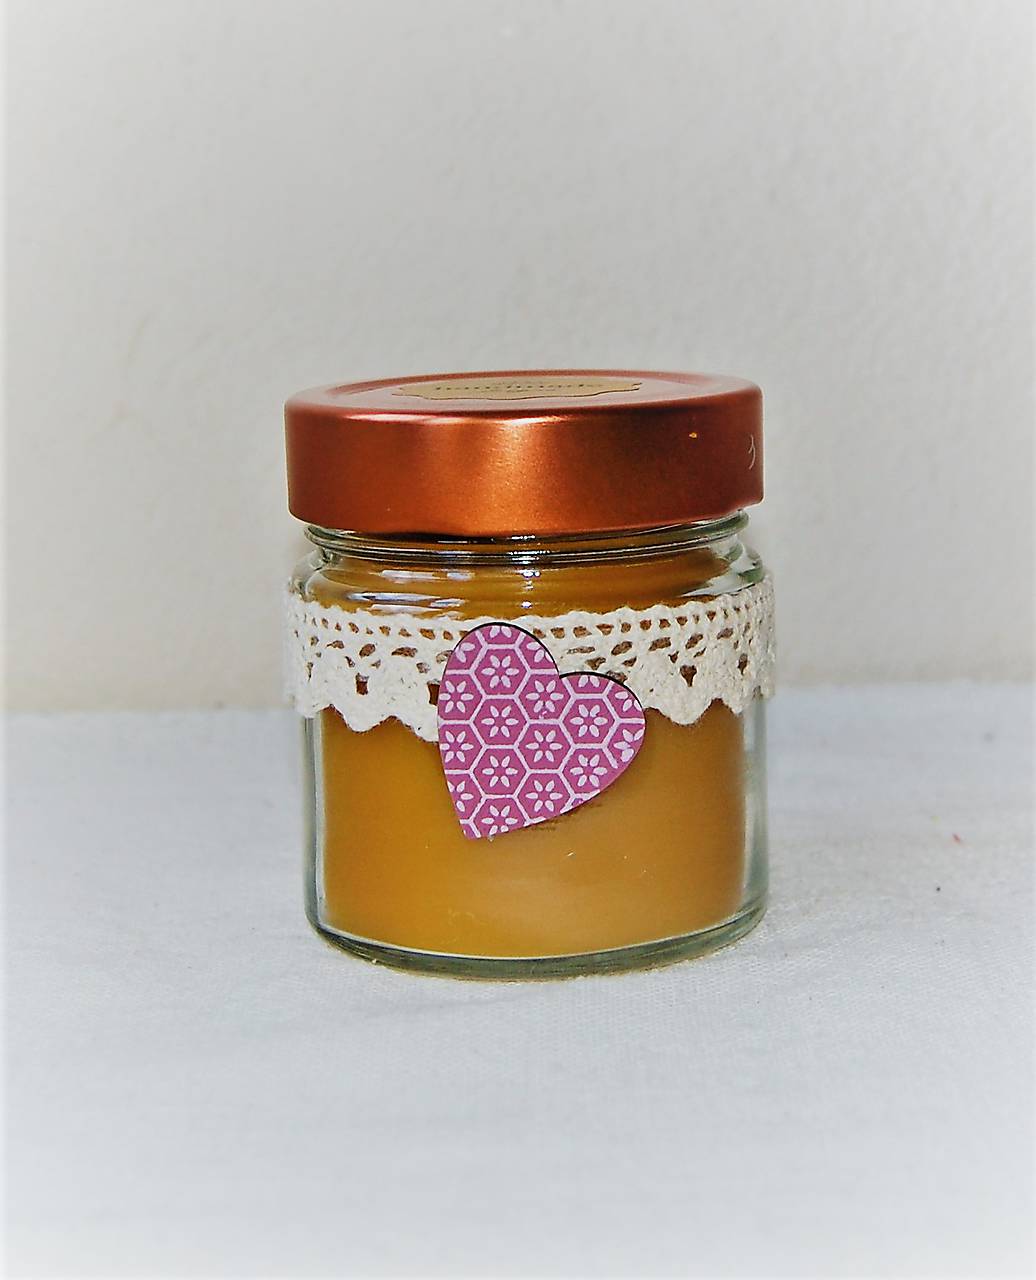 Sviečka z včelieho vosku v sklenenom pohári s fialovým srdiečkom